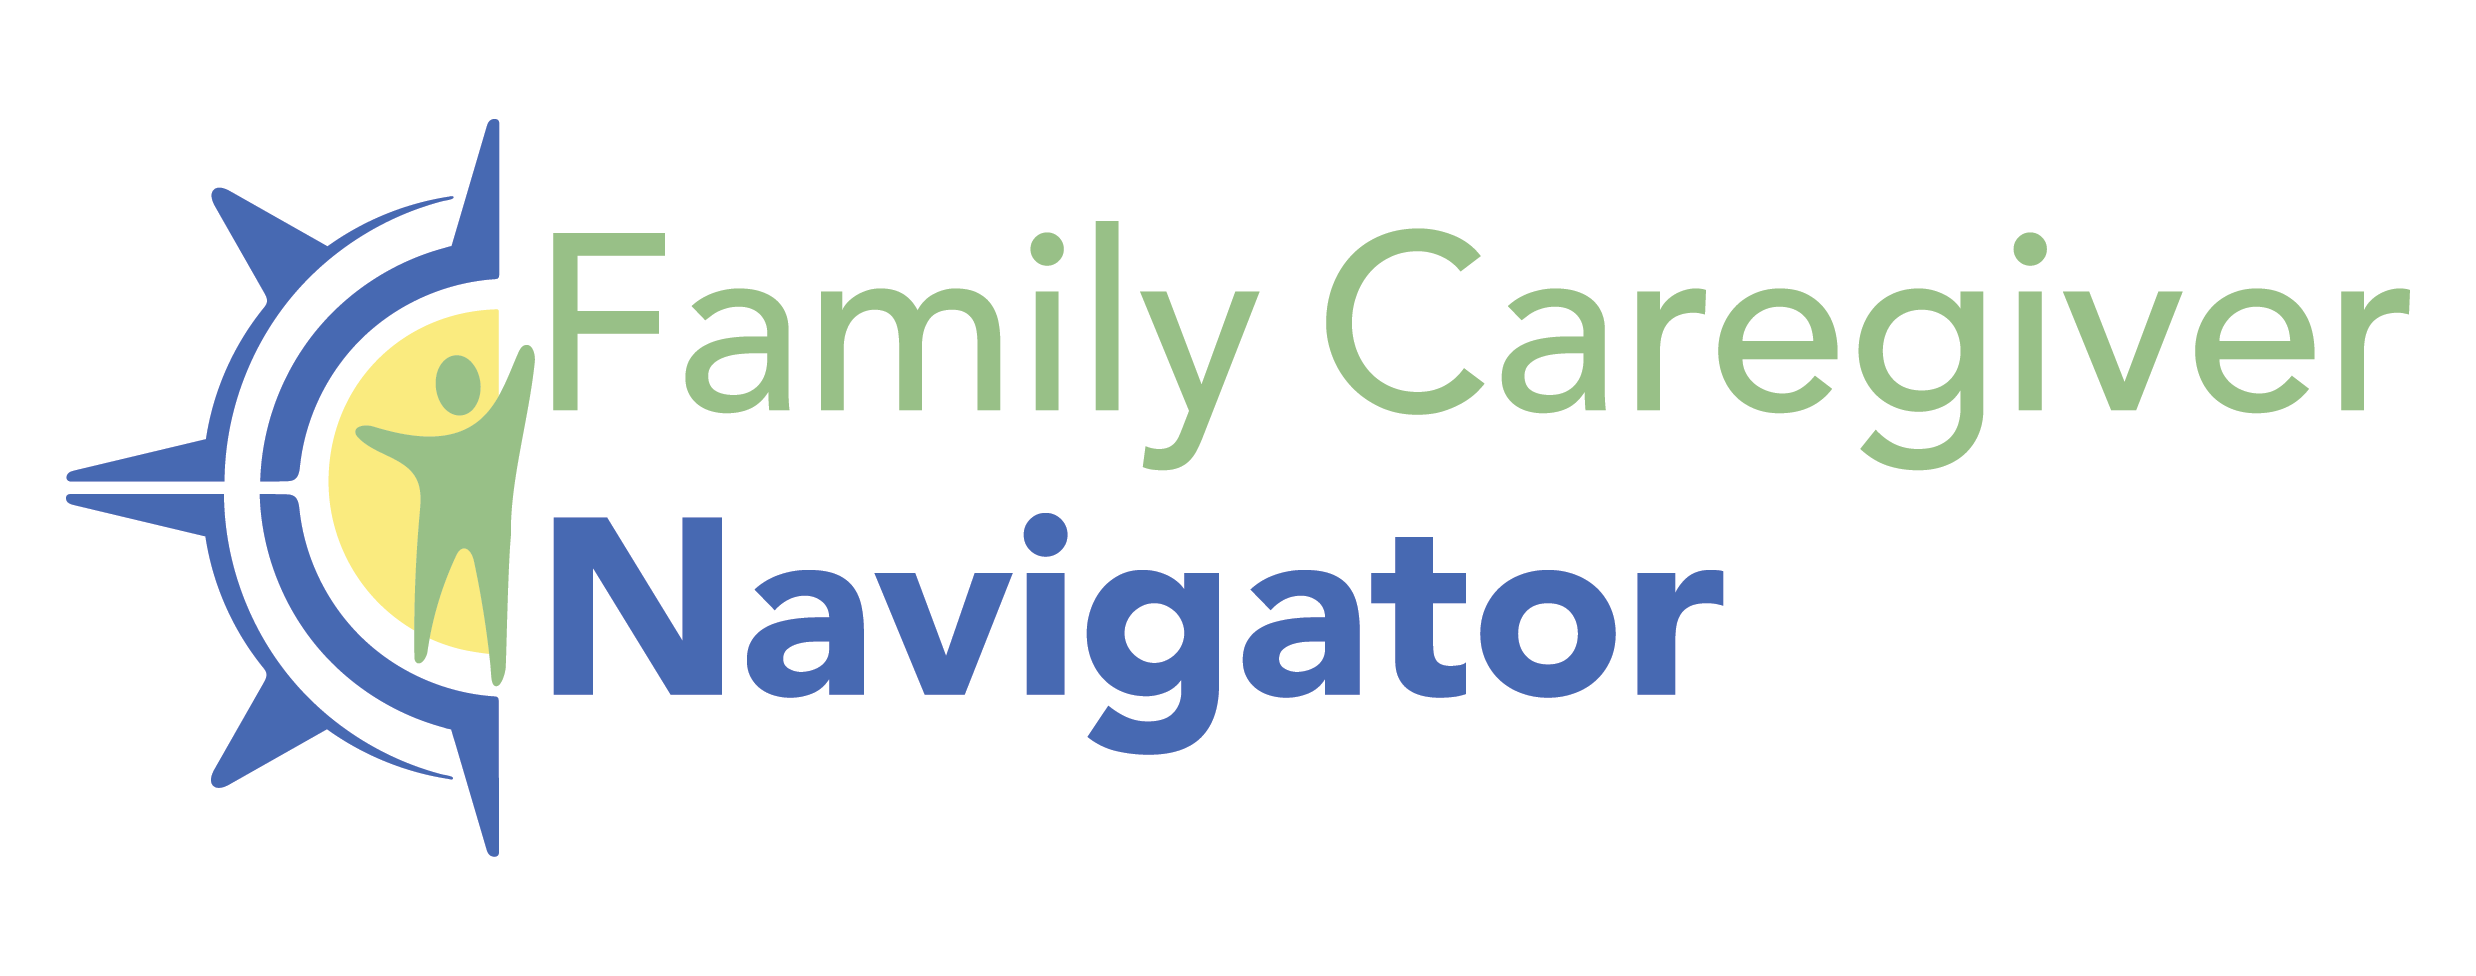 Family Caregiver Navigator Logo 